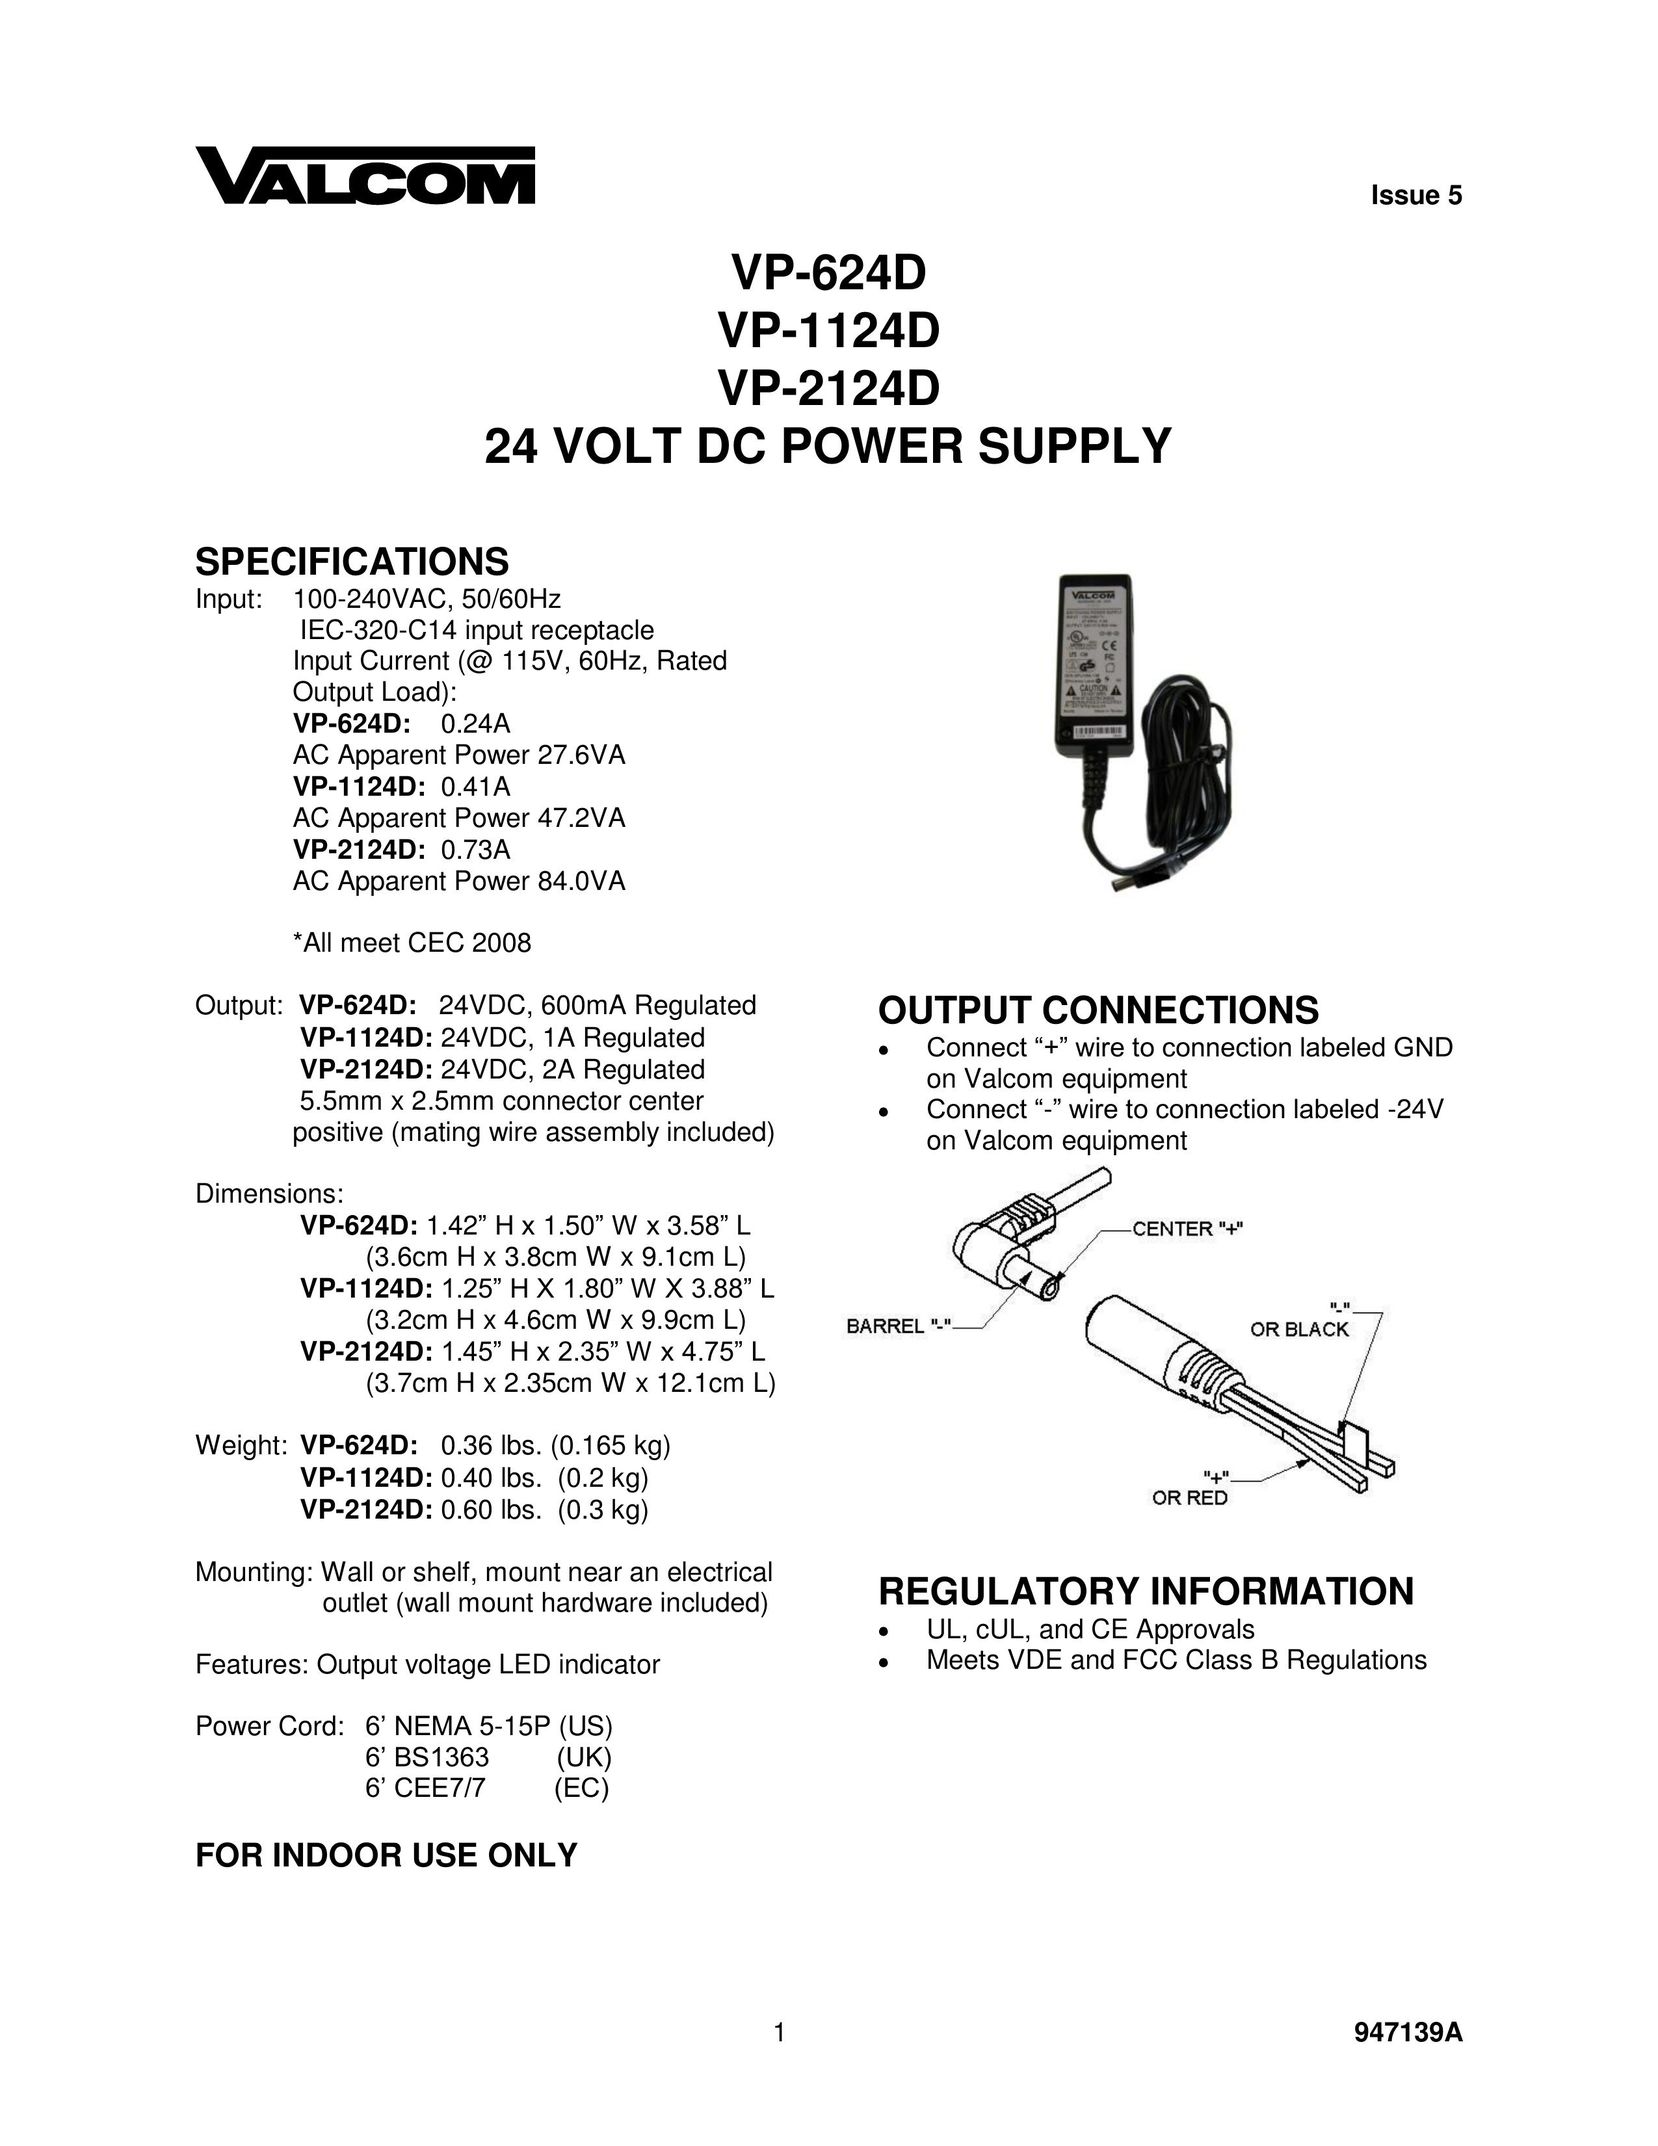 Valcom VP-2124D Power Supply User Manual